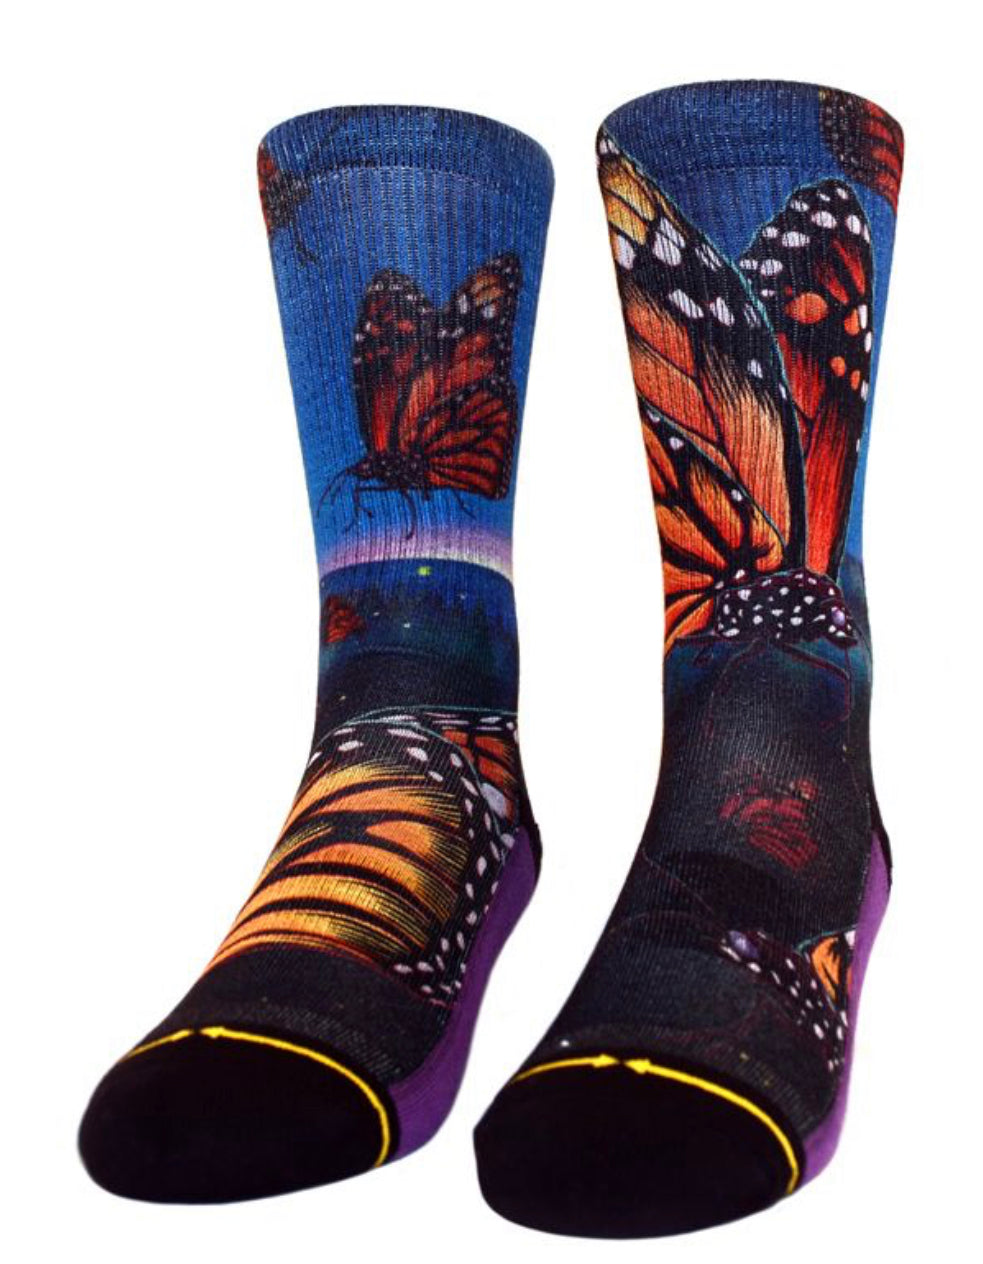 Butterfly socks